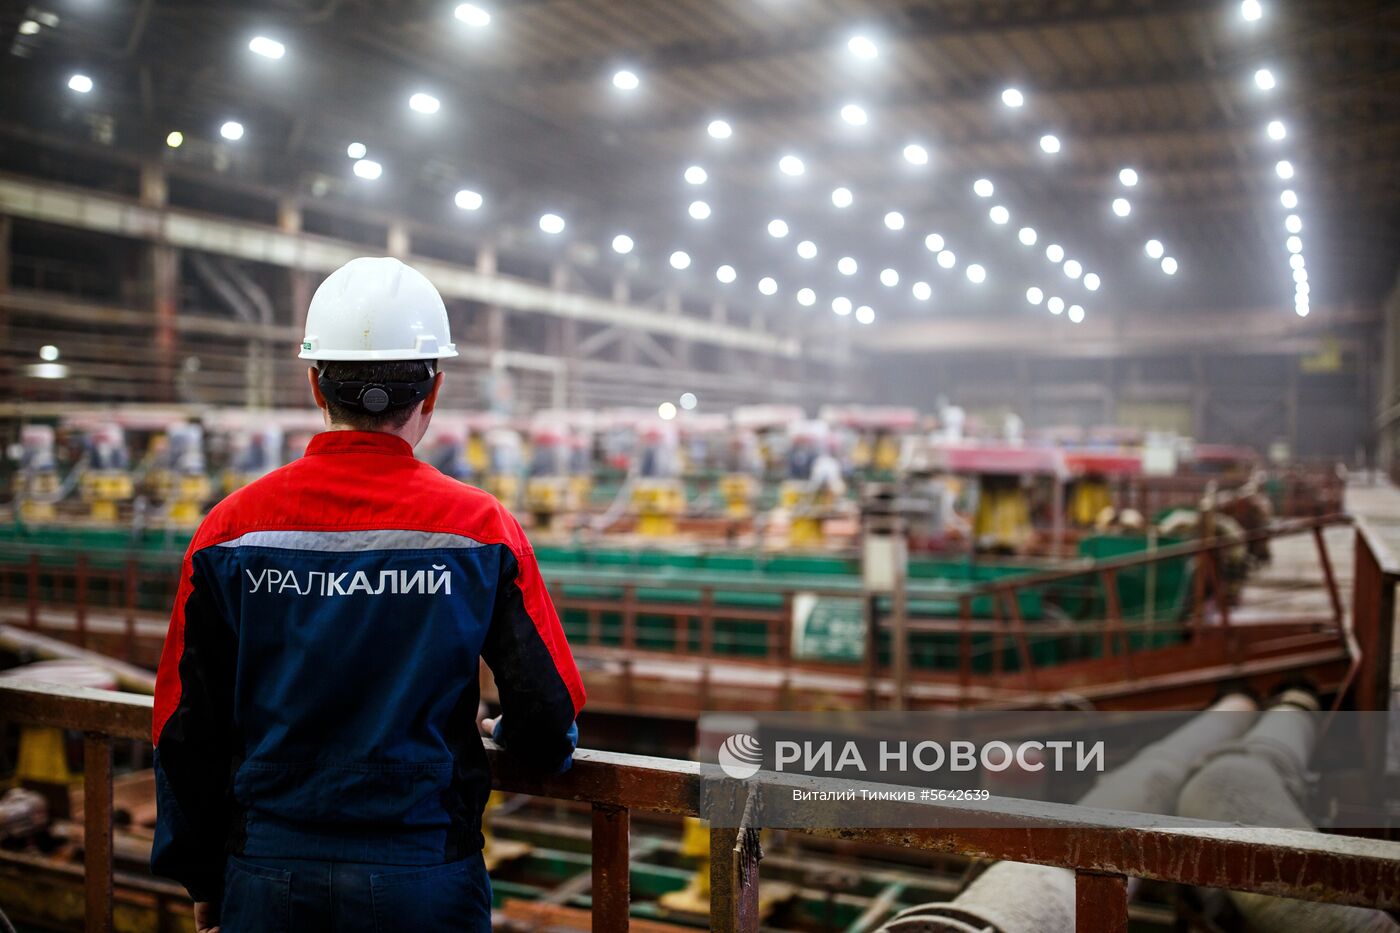 Сильвинитовая обогатительная фабрика в Пермском крае